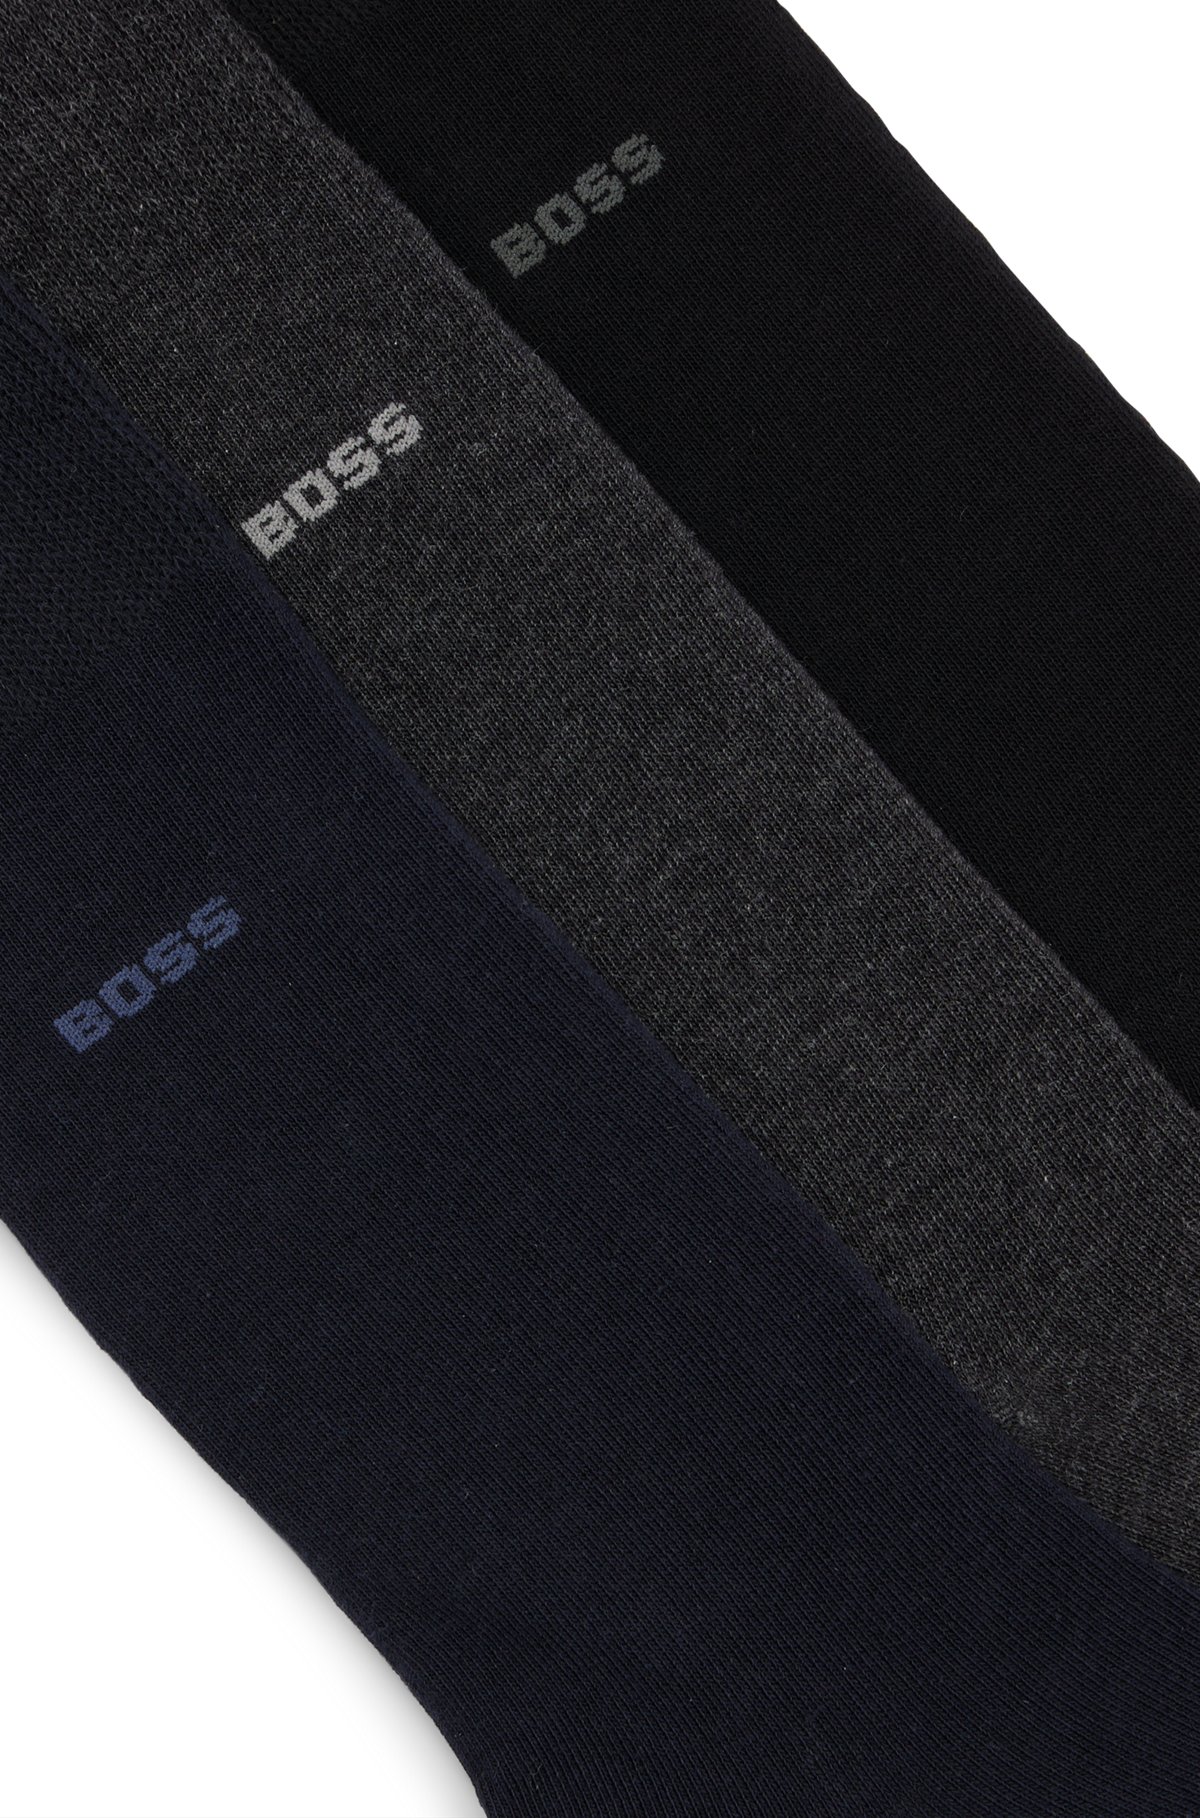 Set van drie paar sokken met normale lengte van stretchmateriaal, Zwart / grijs